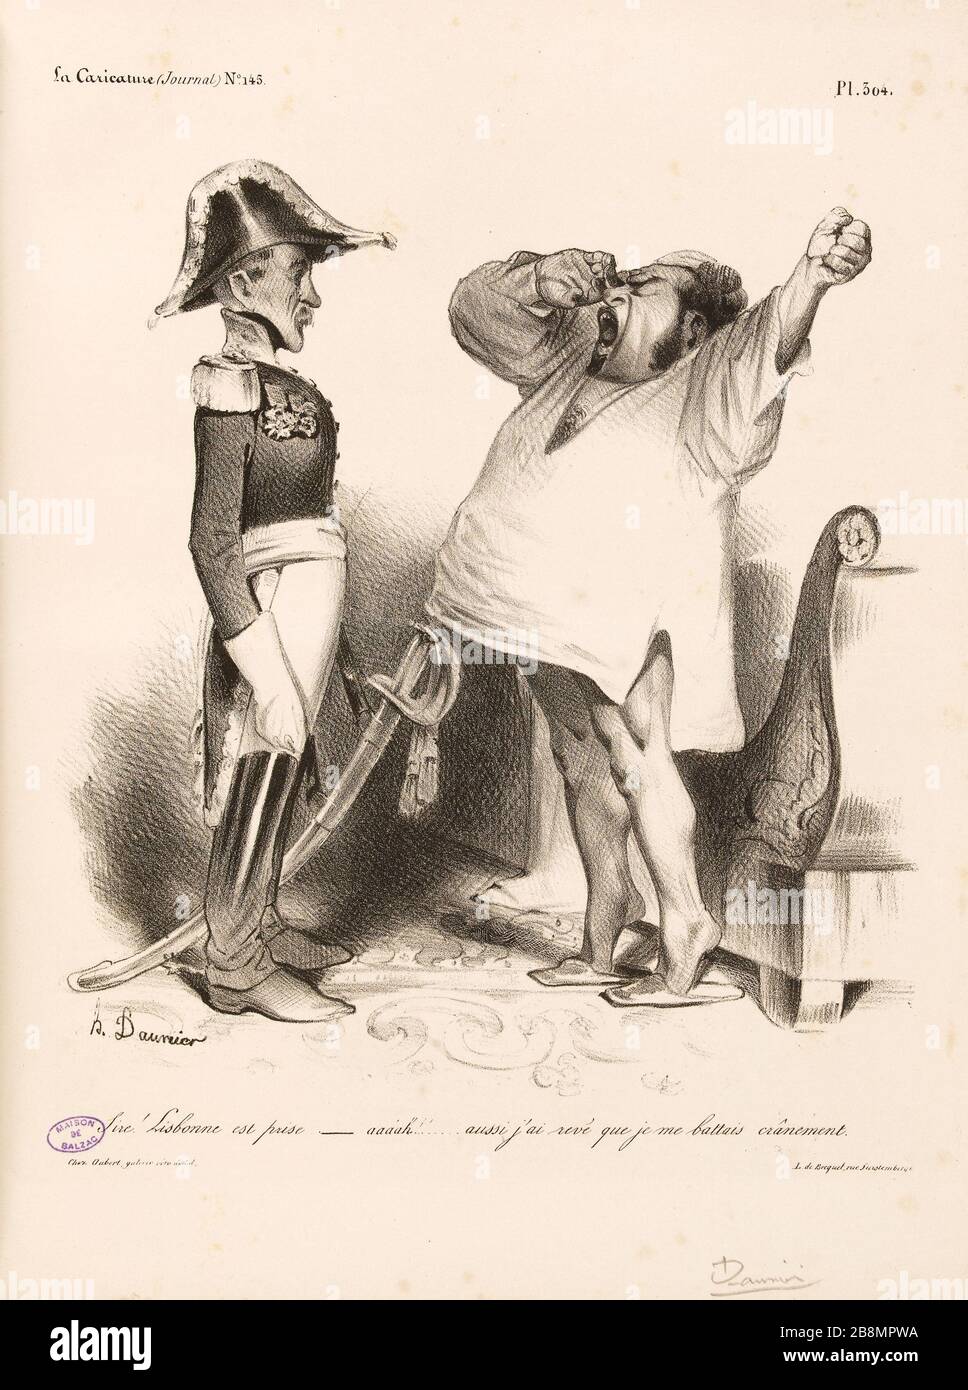 Sire! Lissabon wird genommen - Aaaah!! ... Ich träumte auch, dass ich mutig gegen Honoré Daumier (1808-1879) kämpfte. Karikatur de Presse. "Bitte! Lisbonne est pry - aaaah!!... aussi j'ai revé que je me battais crânement'. Planche parue dans 'La caricature' du 15 août 1833. Lithographie. Paris, Maison de Balzac. Stockfoto